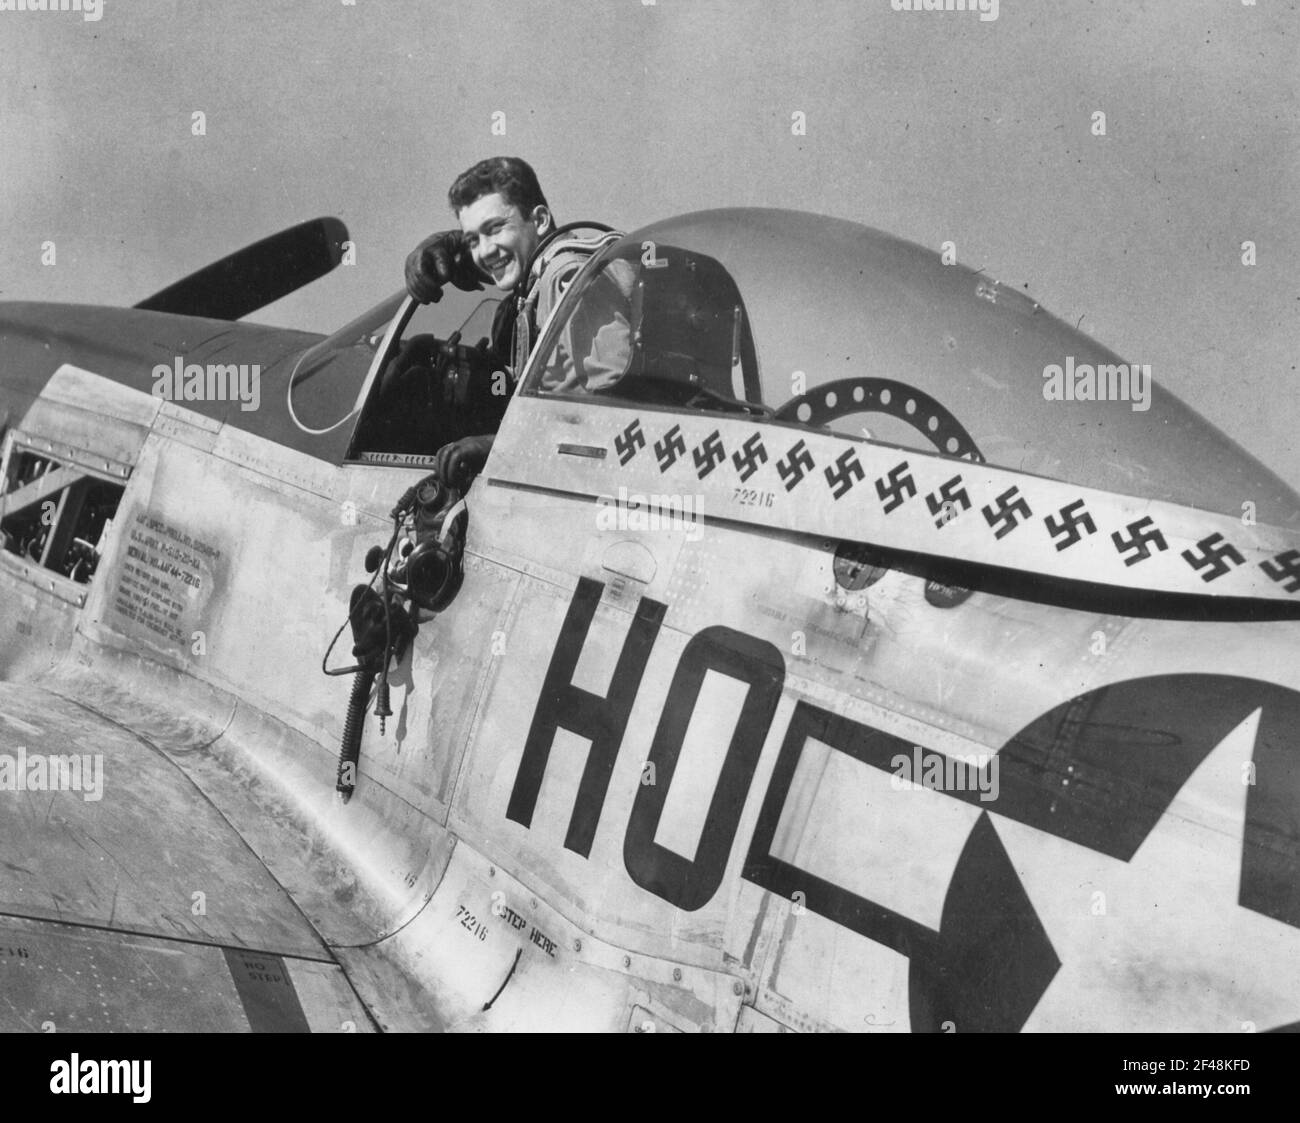 England - Kapitän Raymond H. Littge aus Altenburg, Mo., brachte seine Punktzahl auf 23 1/2 deutsche Flugzeuge zerstört (10 1/2 in der Luft, 13 Boden), indem er neun Boden tötet zu seinem Rekord in zwei Tagen der Boden Straffing. Der 21-jährige 352Nd North American P-51 Mustang Stockfoto